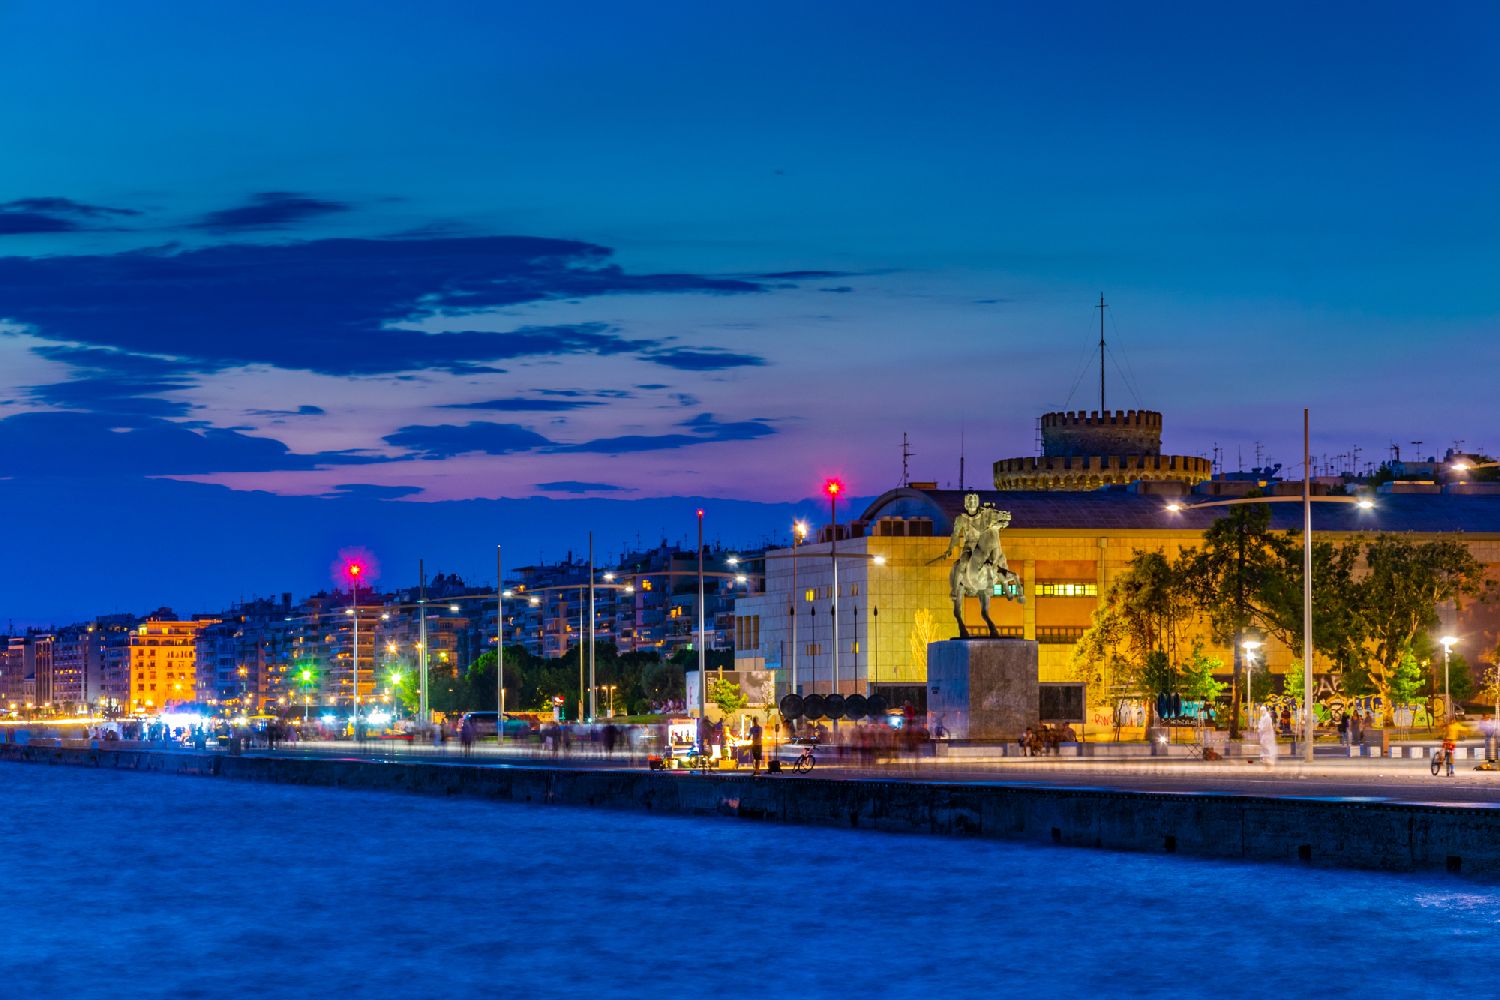 Night view of seaside promenade in Thessaloniki, Greece